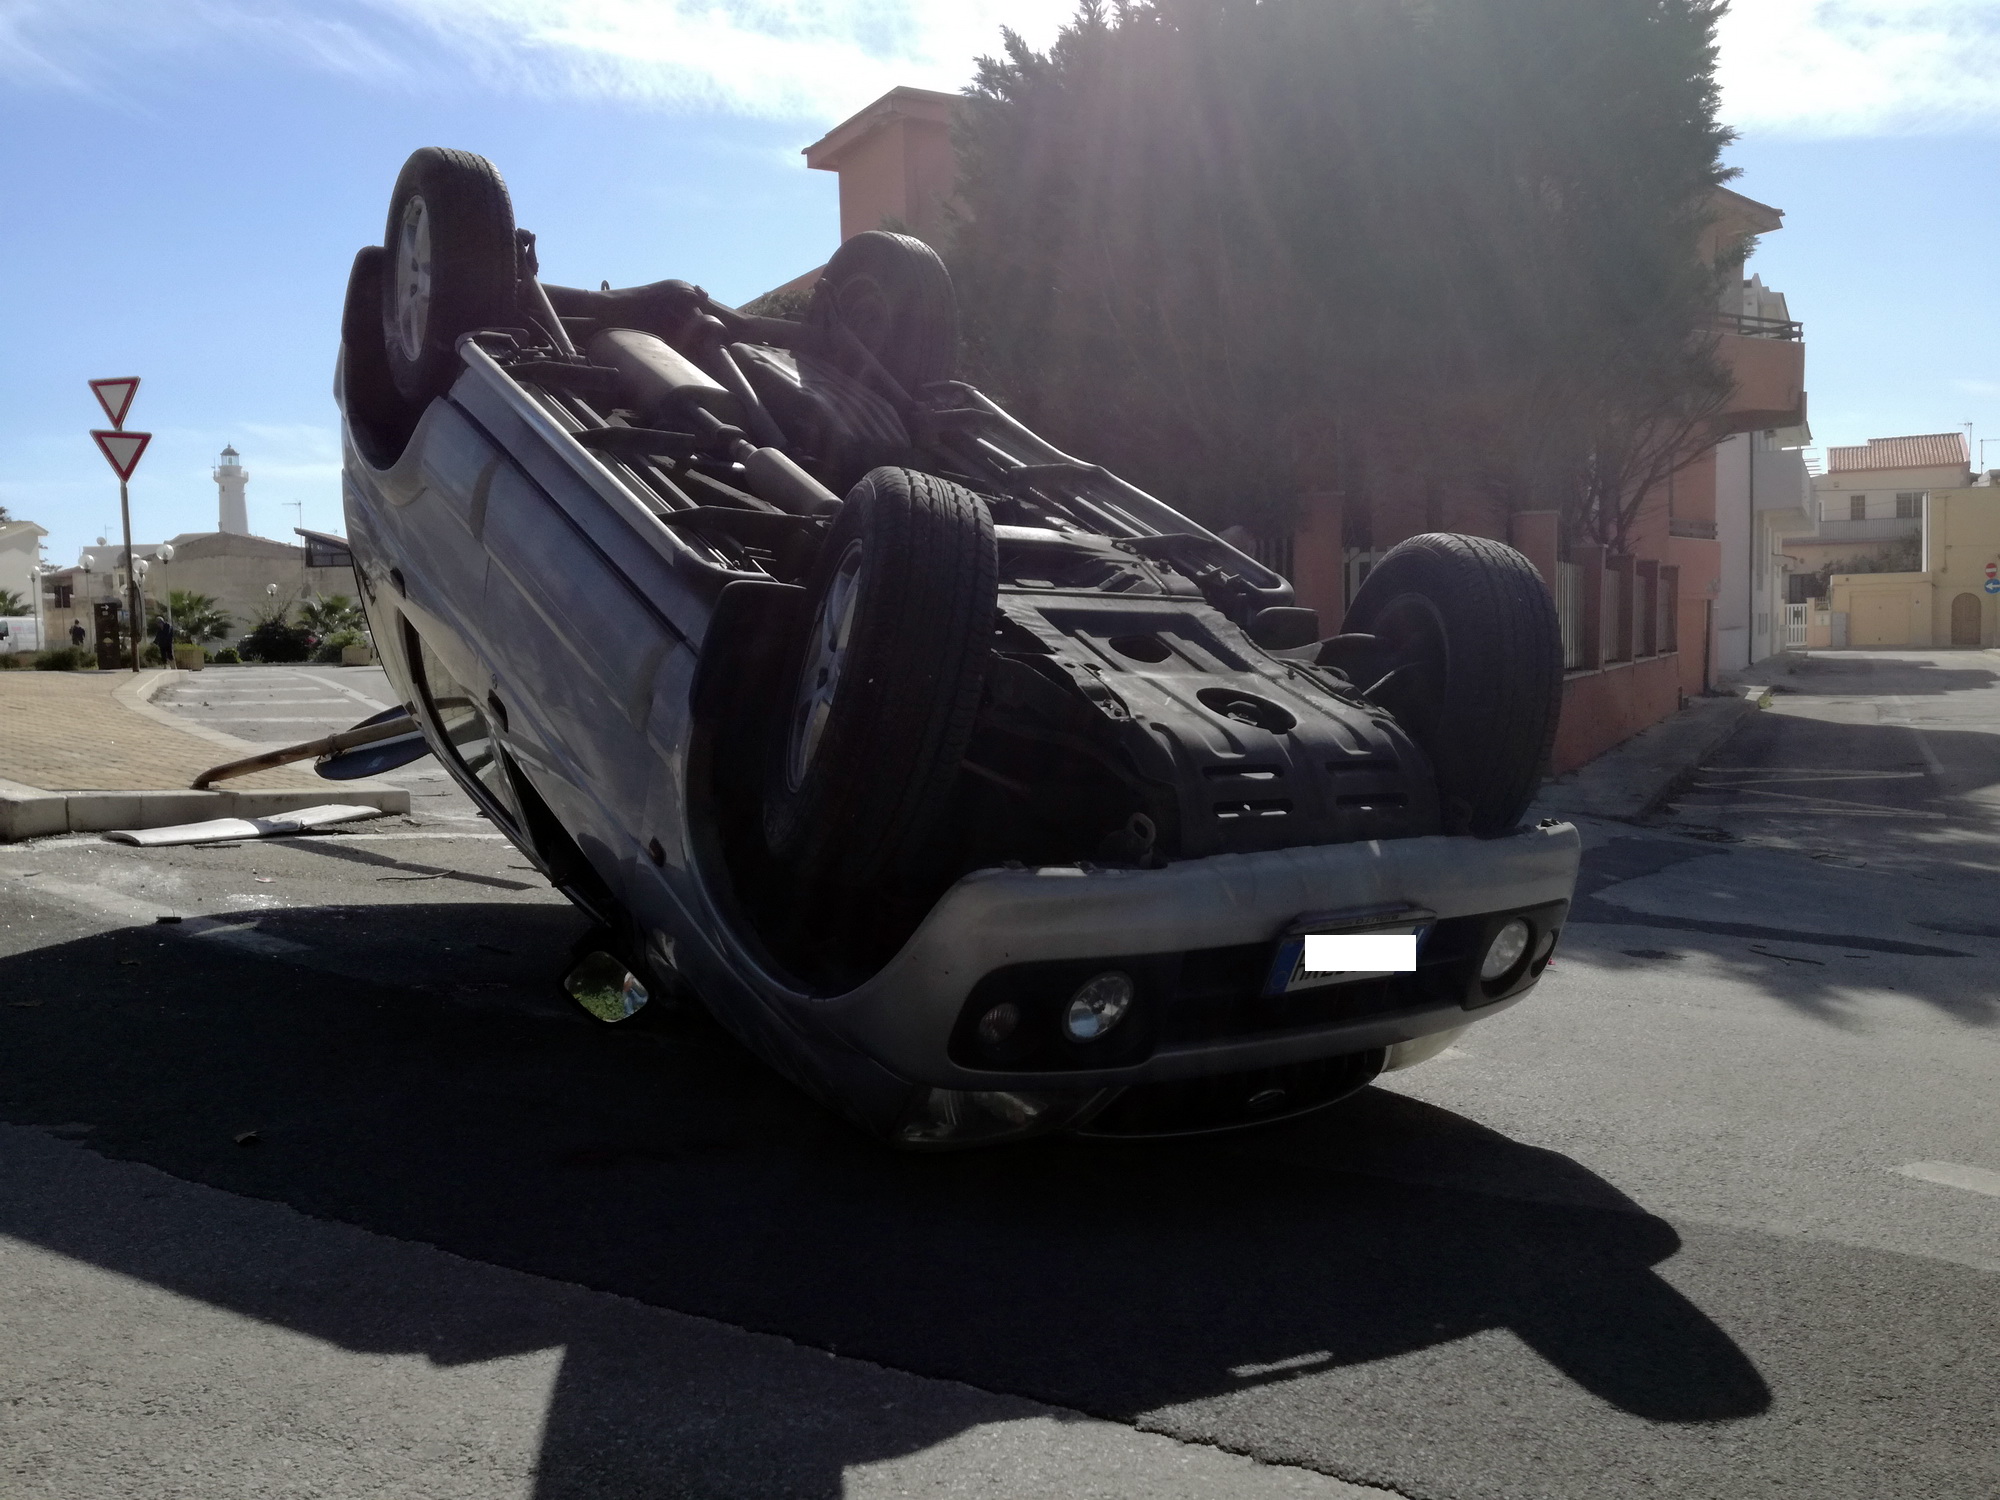  Tamponamento all’ingresso di P.Secca: un’auto si cappotta, conducente illeso